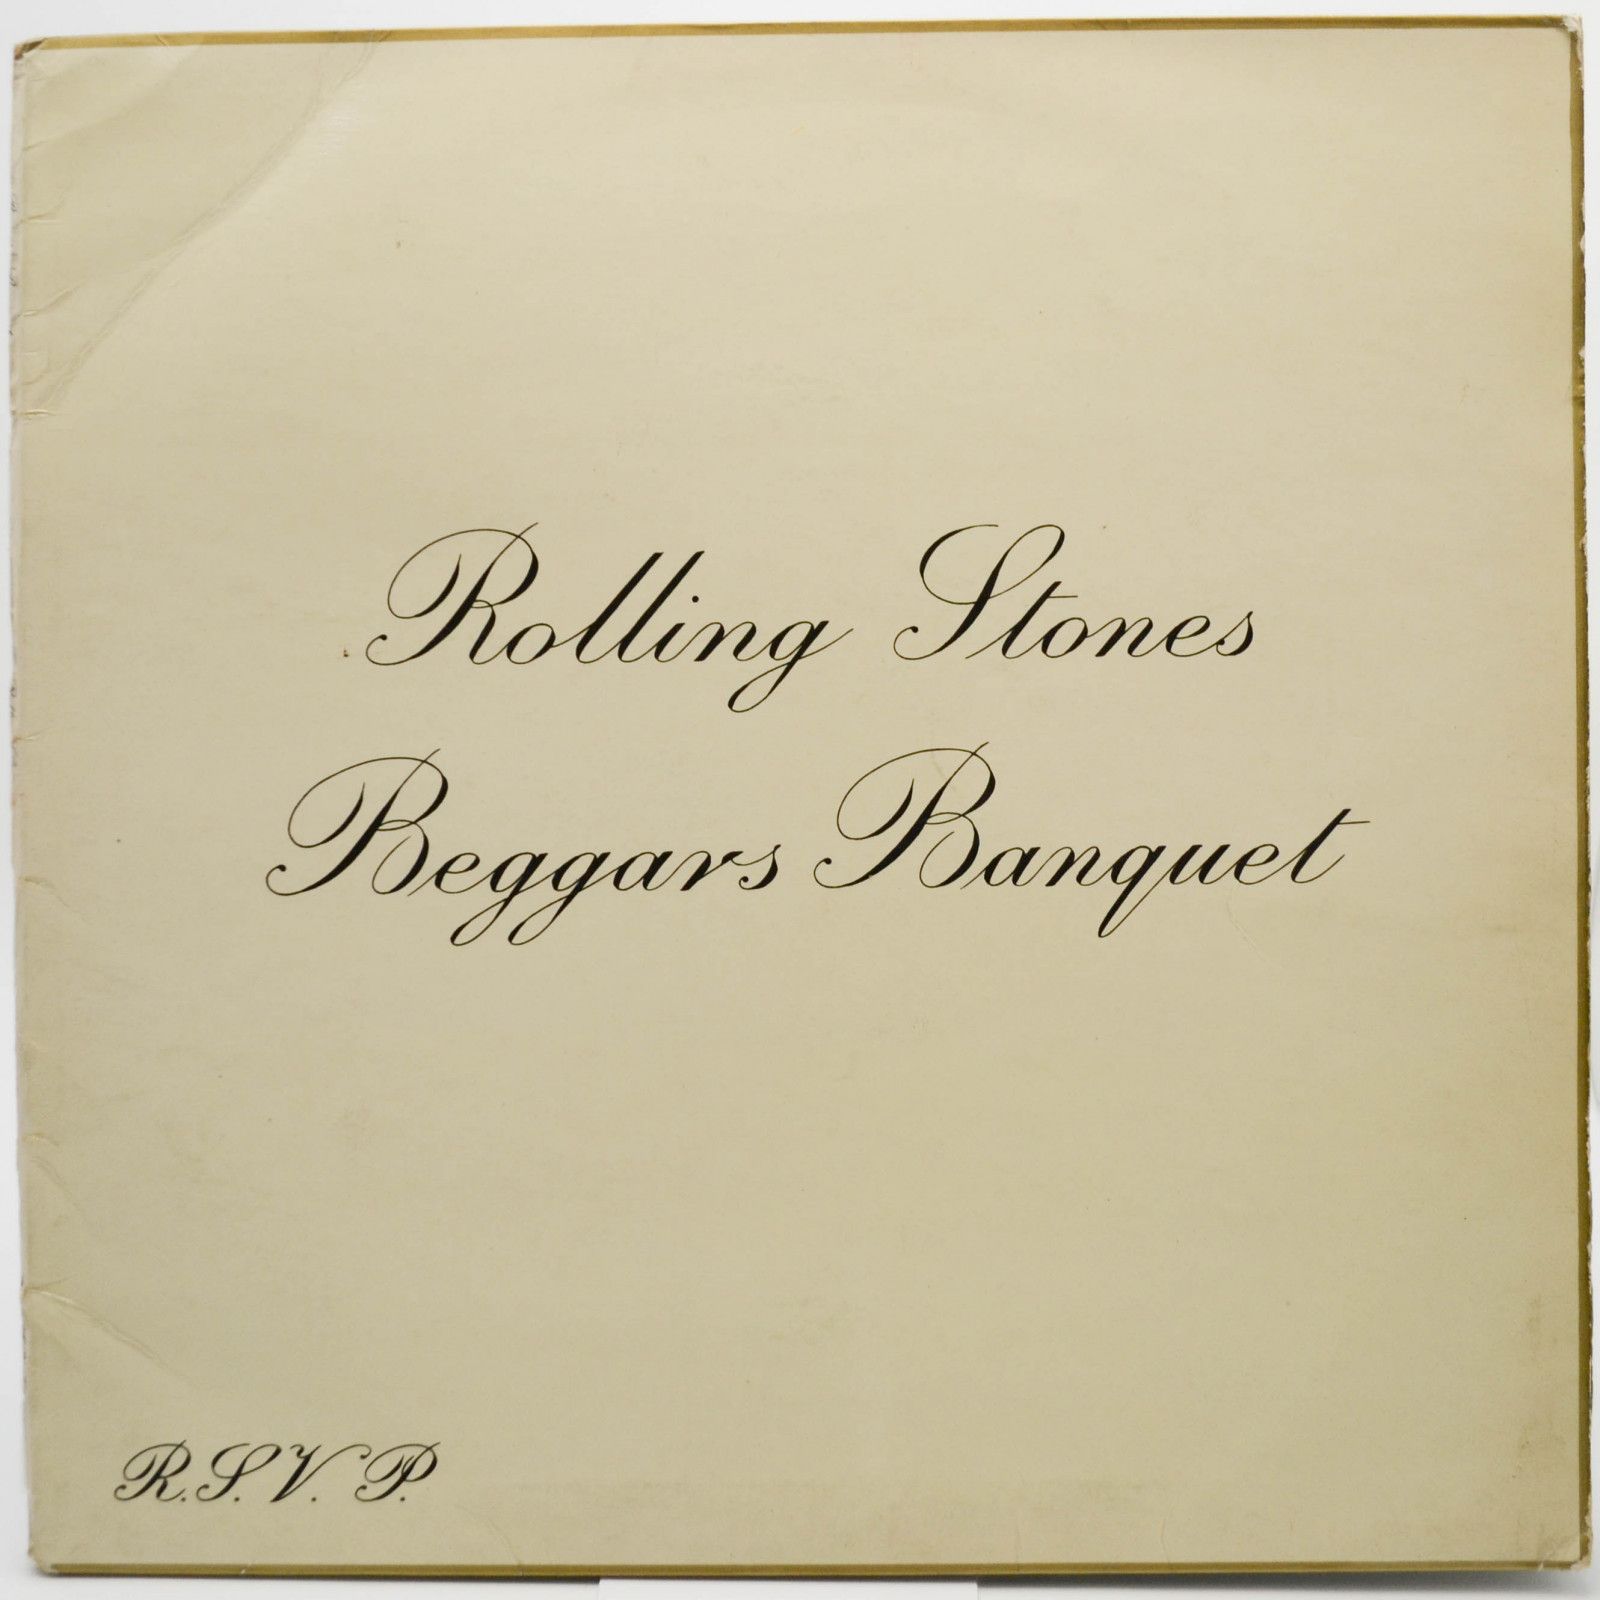 Rolling Stones — Beggars Banquet (UK), 1968